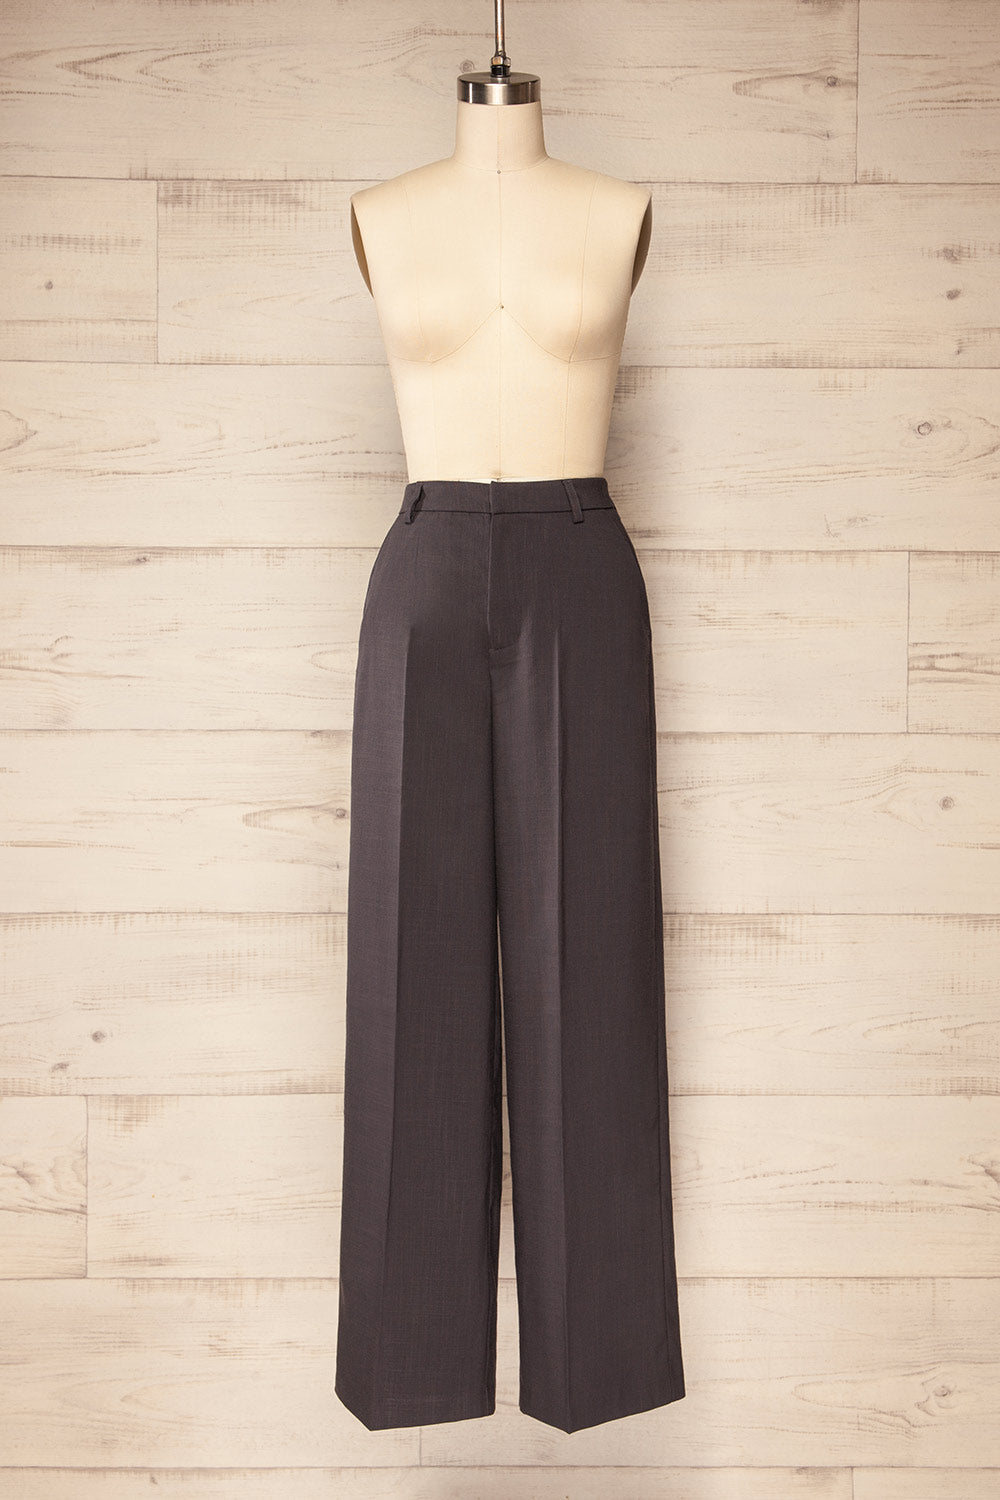 Bancroft Grey Oversized Pants w/ Front Pleats | La petite garçonne front view